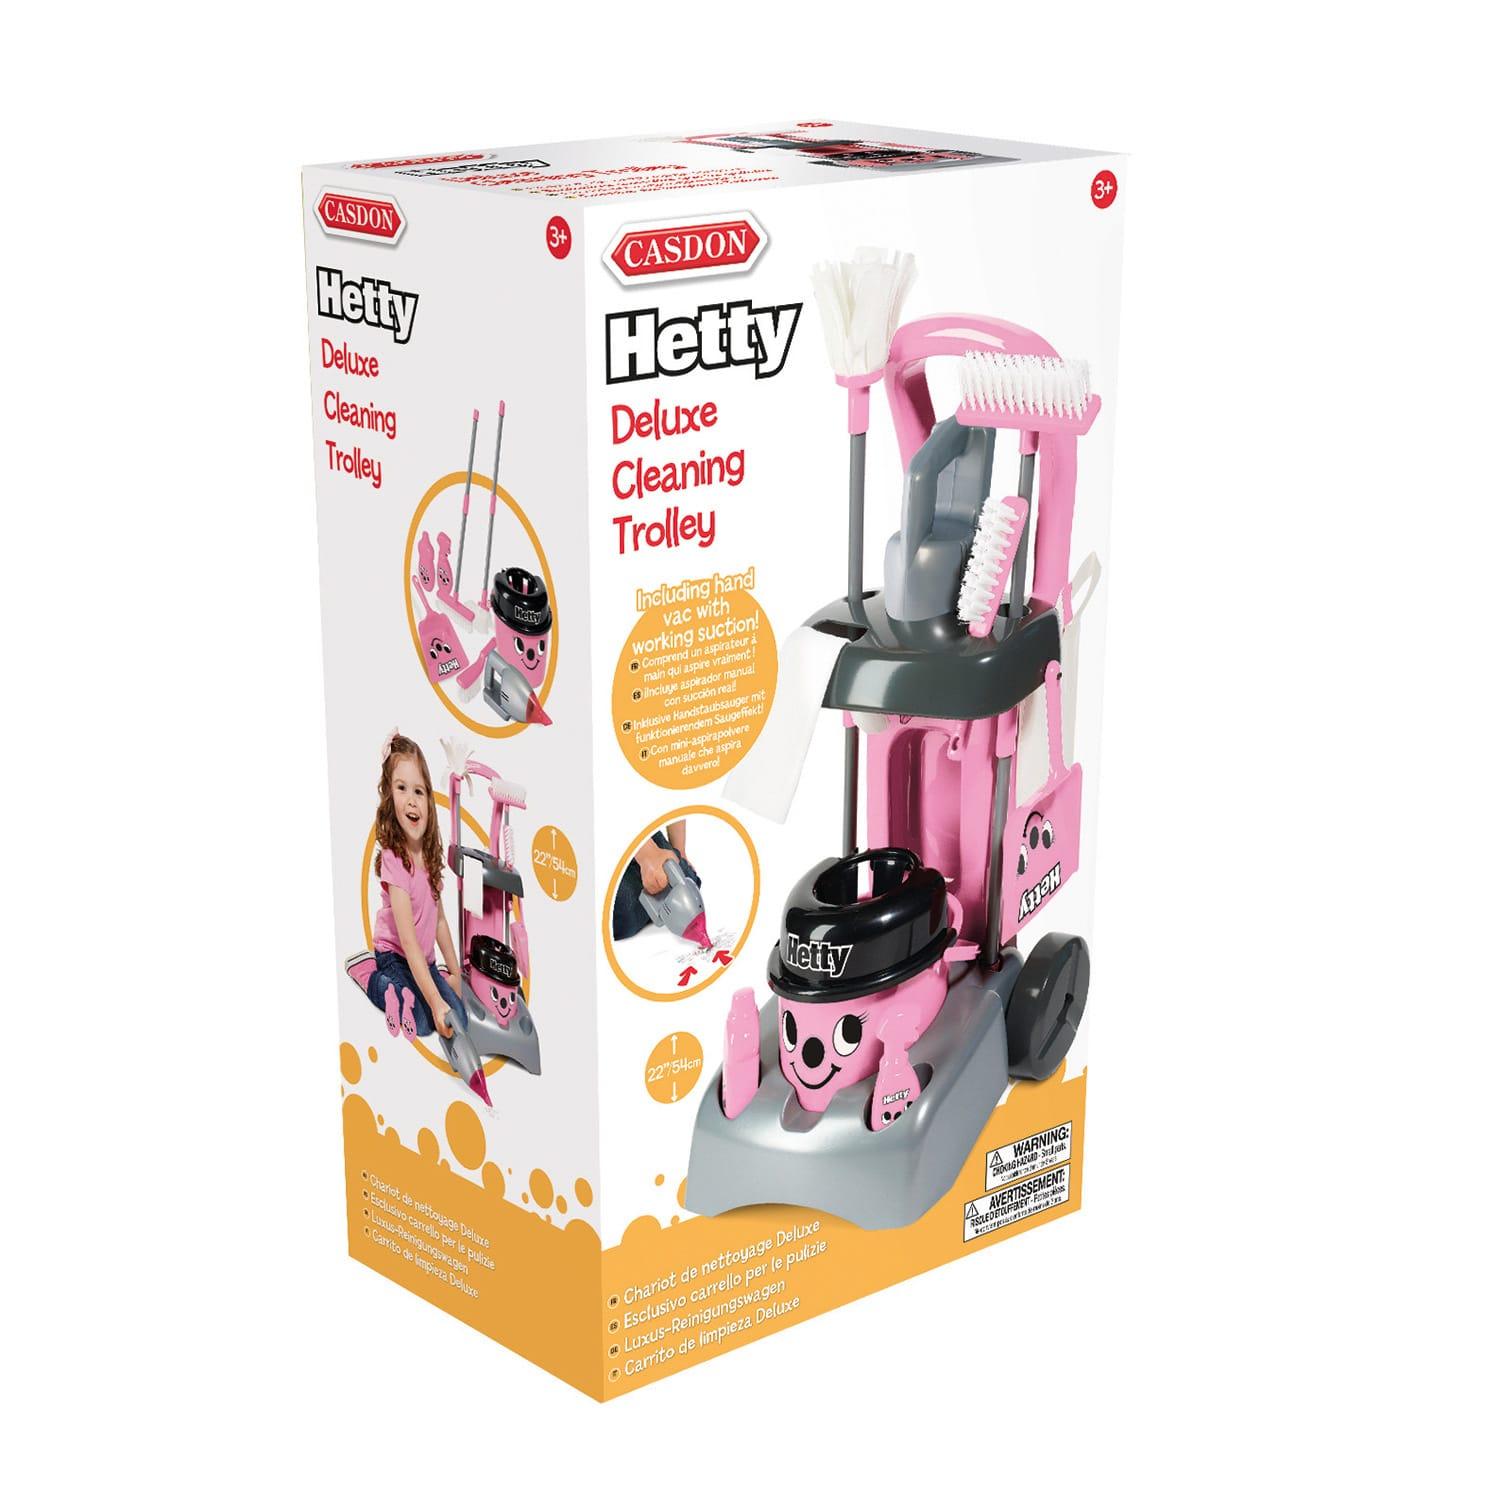 Casdon Little Helper Hetty Hoover & Trolley Cleaning Toy Set Playset Bundle 